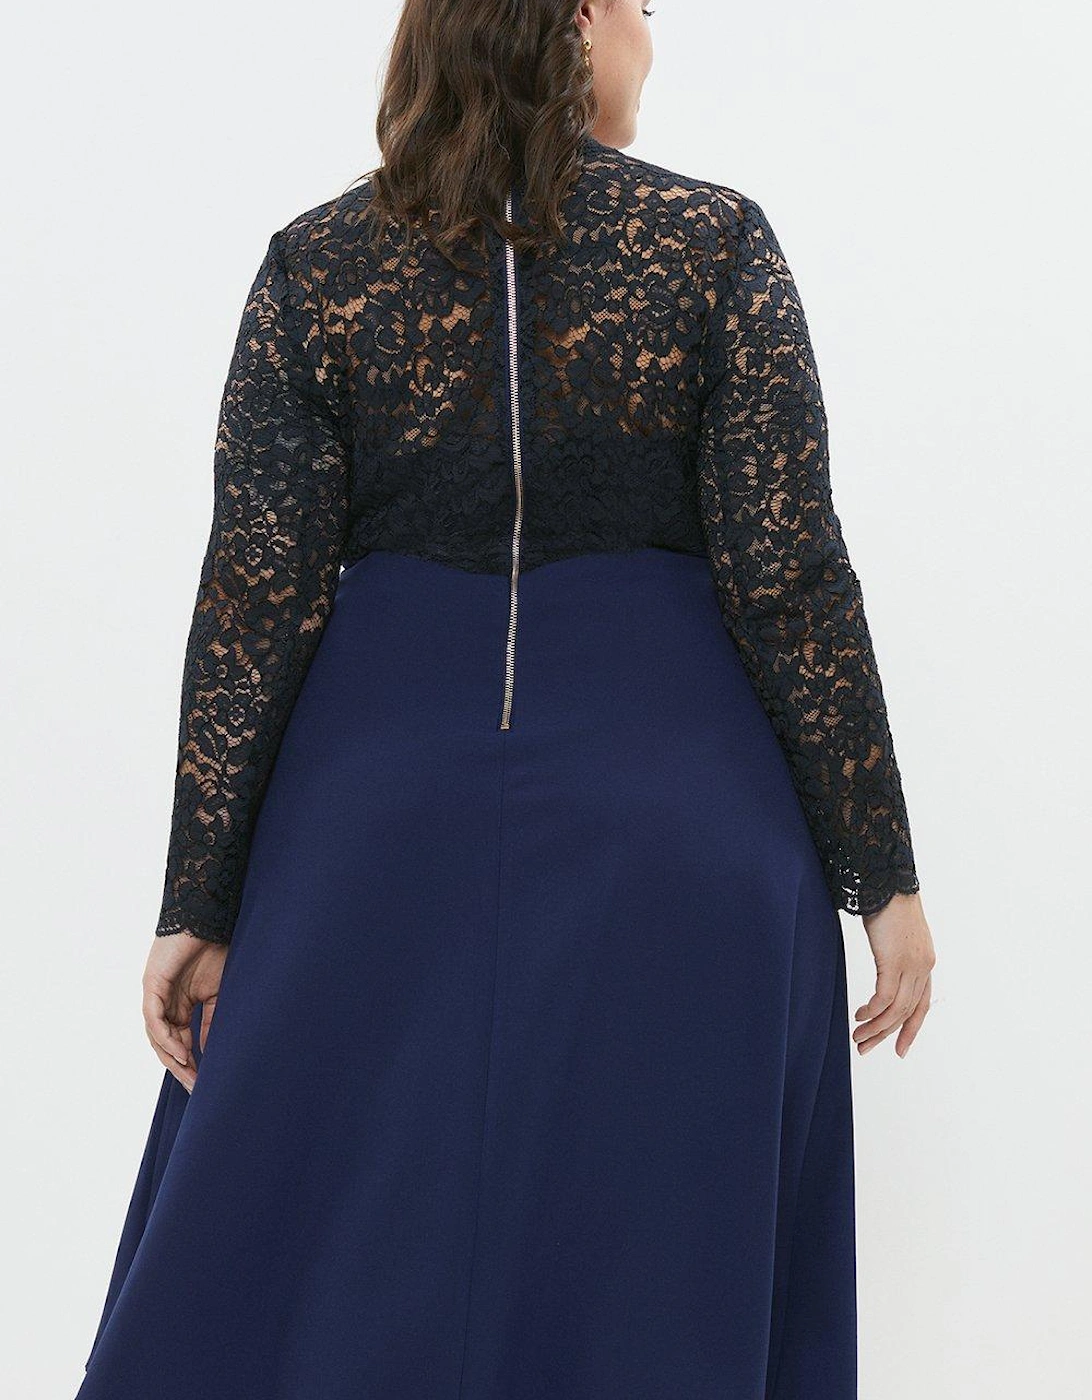 Plus Size Premium Lace Top Full Skirt Midi Dress